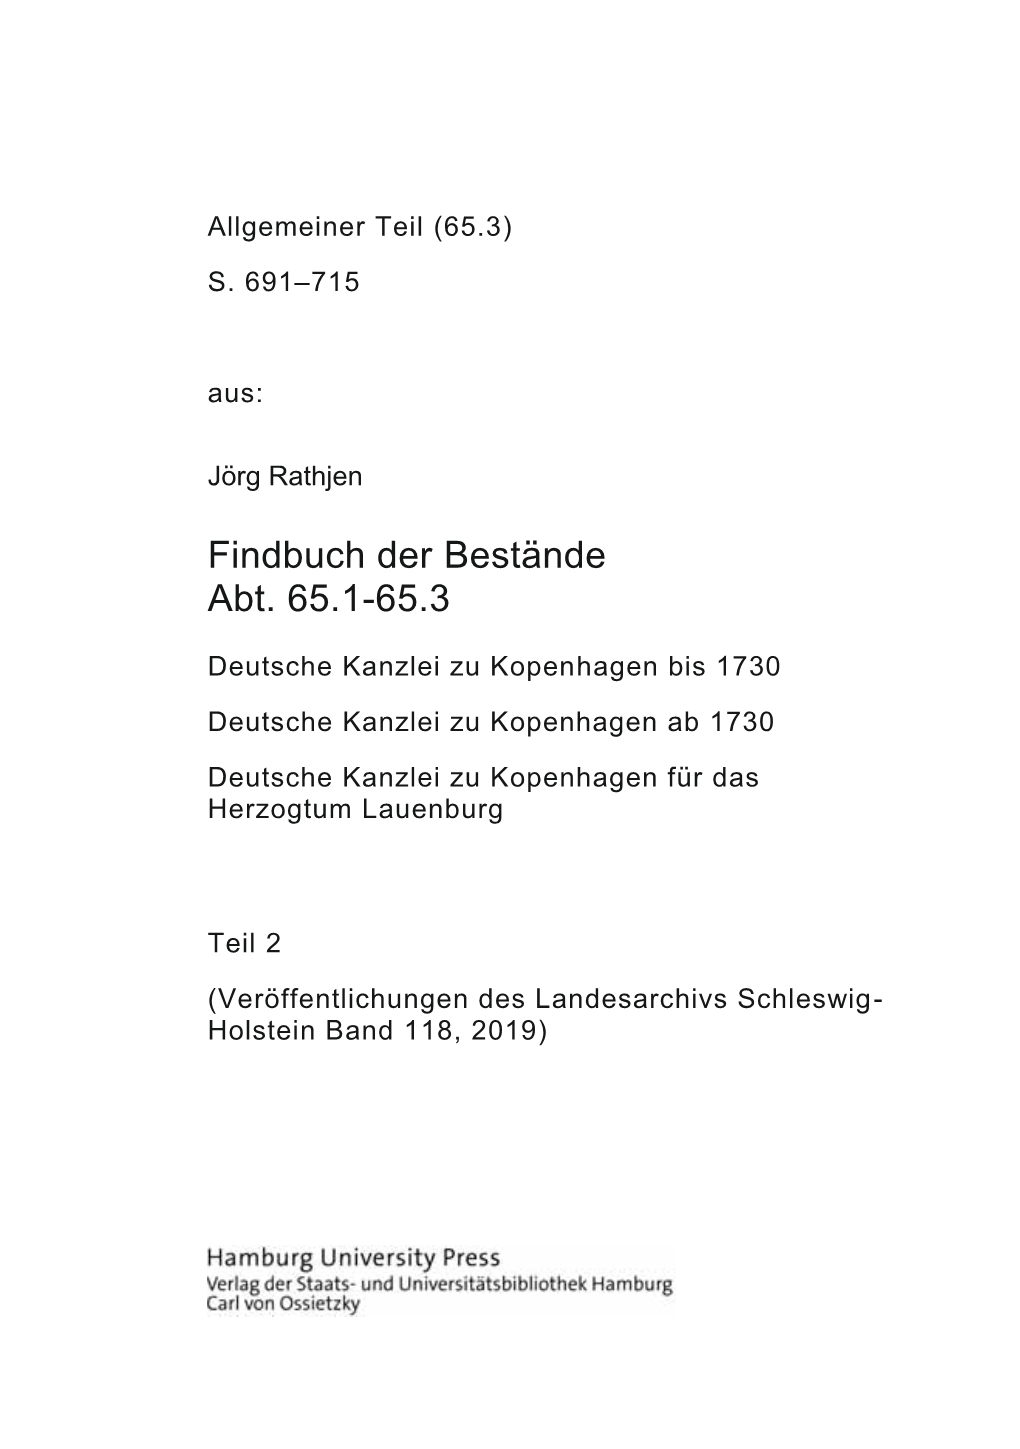 Findbuch Des Bestandes Abt. 65.1-65.3